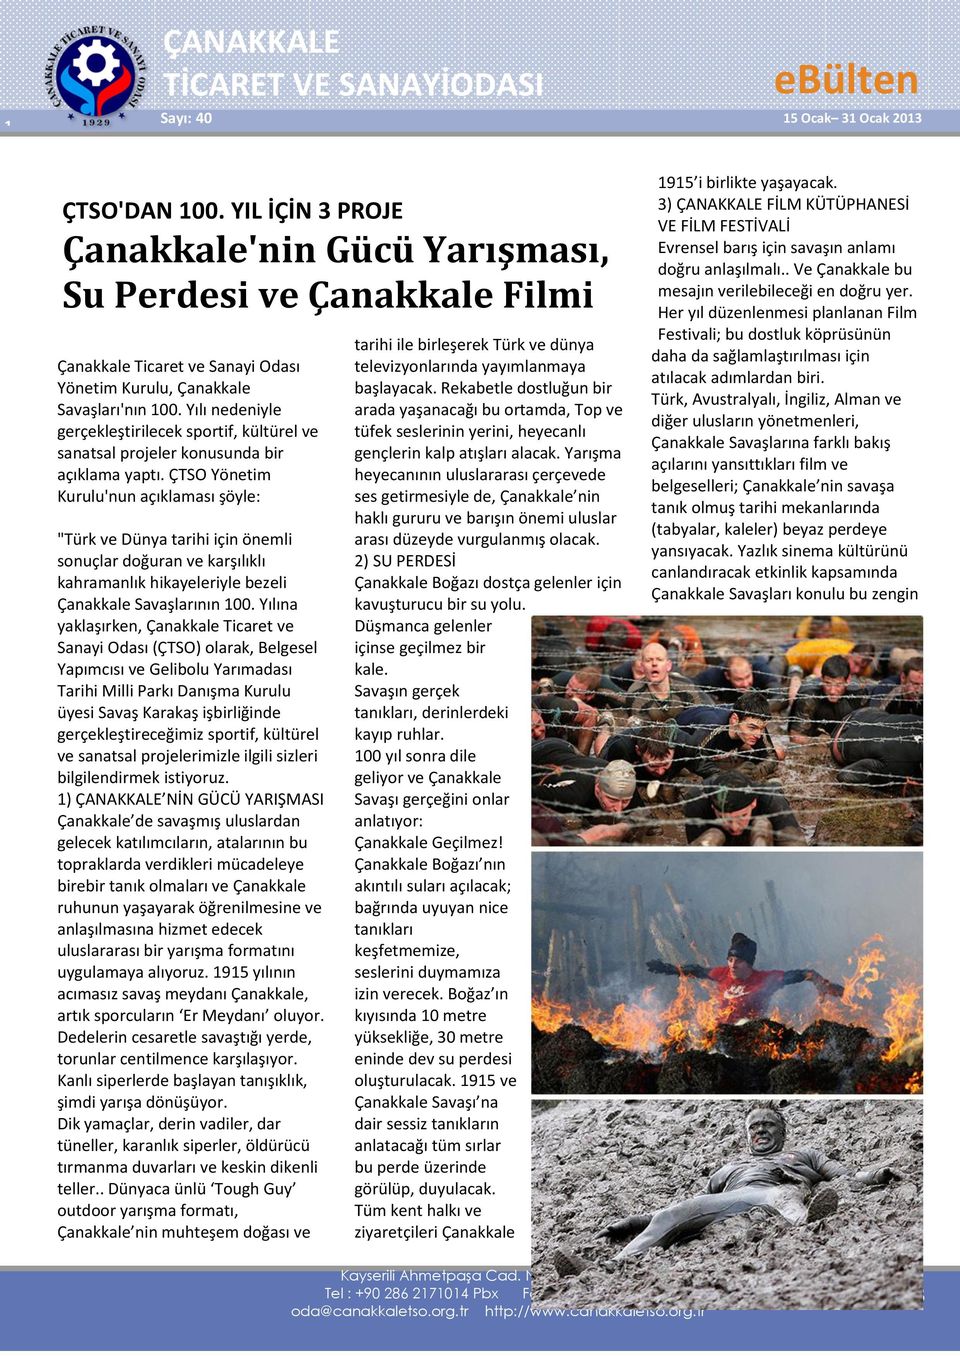 ÇTSO Yönetim Kurulu'nun açıklaması şöyle: "Türk ve Dünya tarihi için önemli sonuçlar doğuran ve karşılıklı kahramanlık hikayeleriyle bezeli Çanakkale Savaşlarının 100.